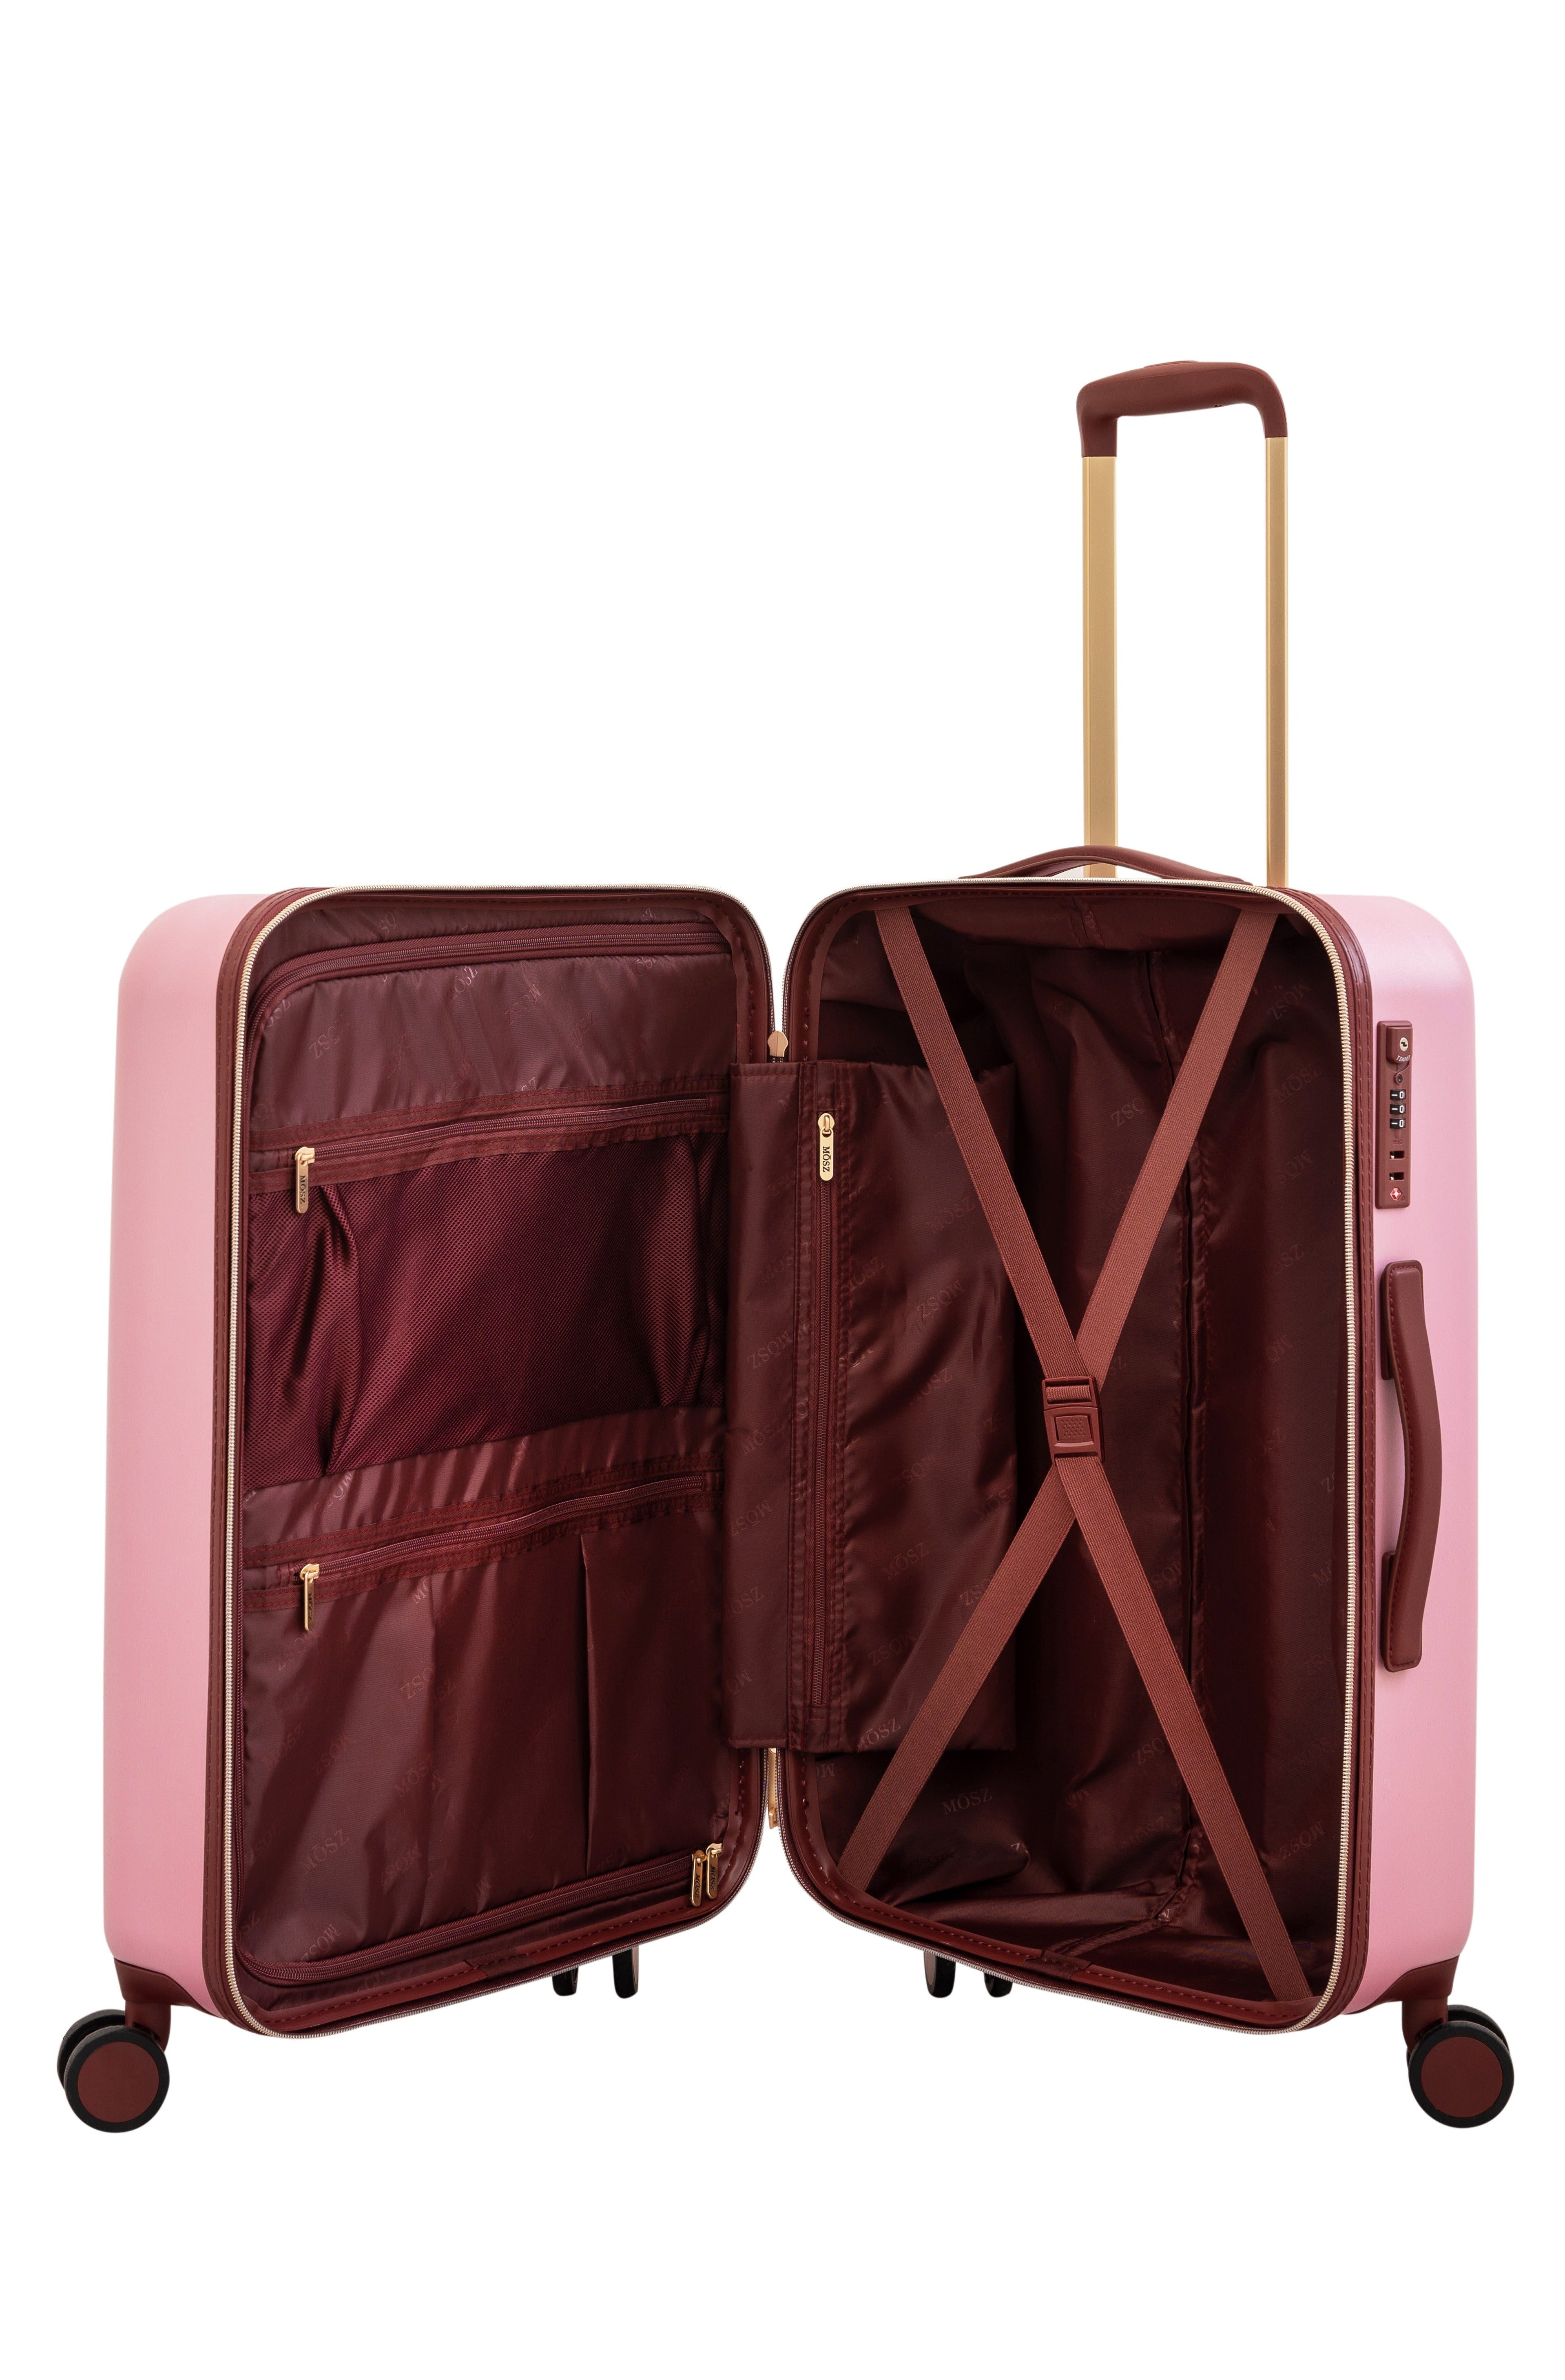 grote roze koffer 66 cm binnenzijde